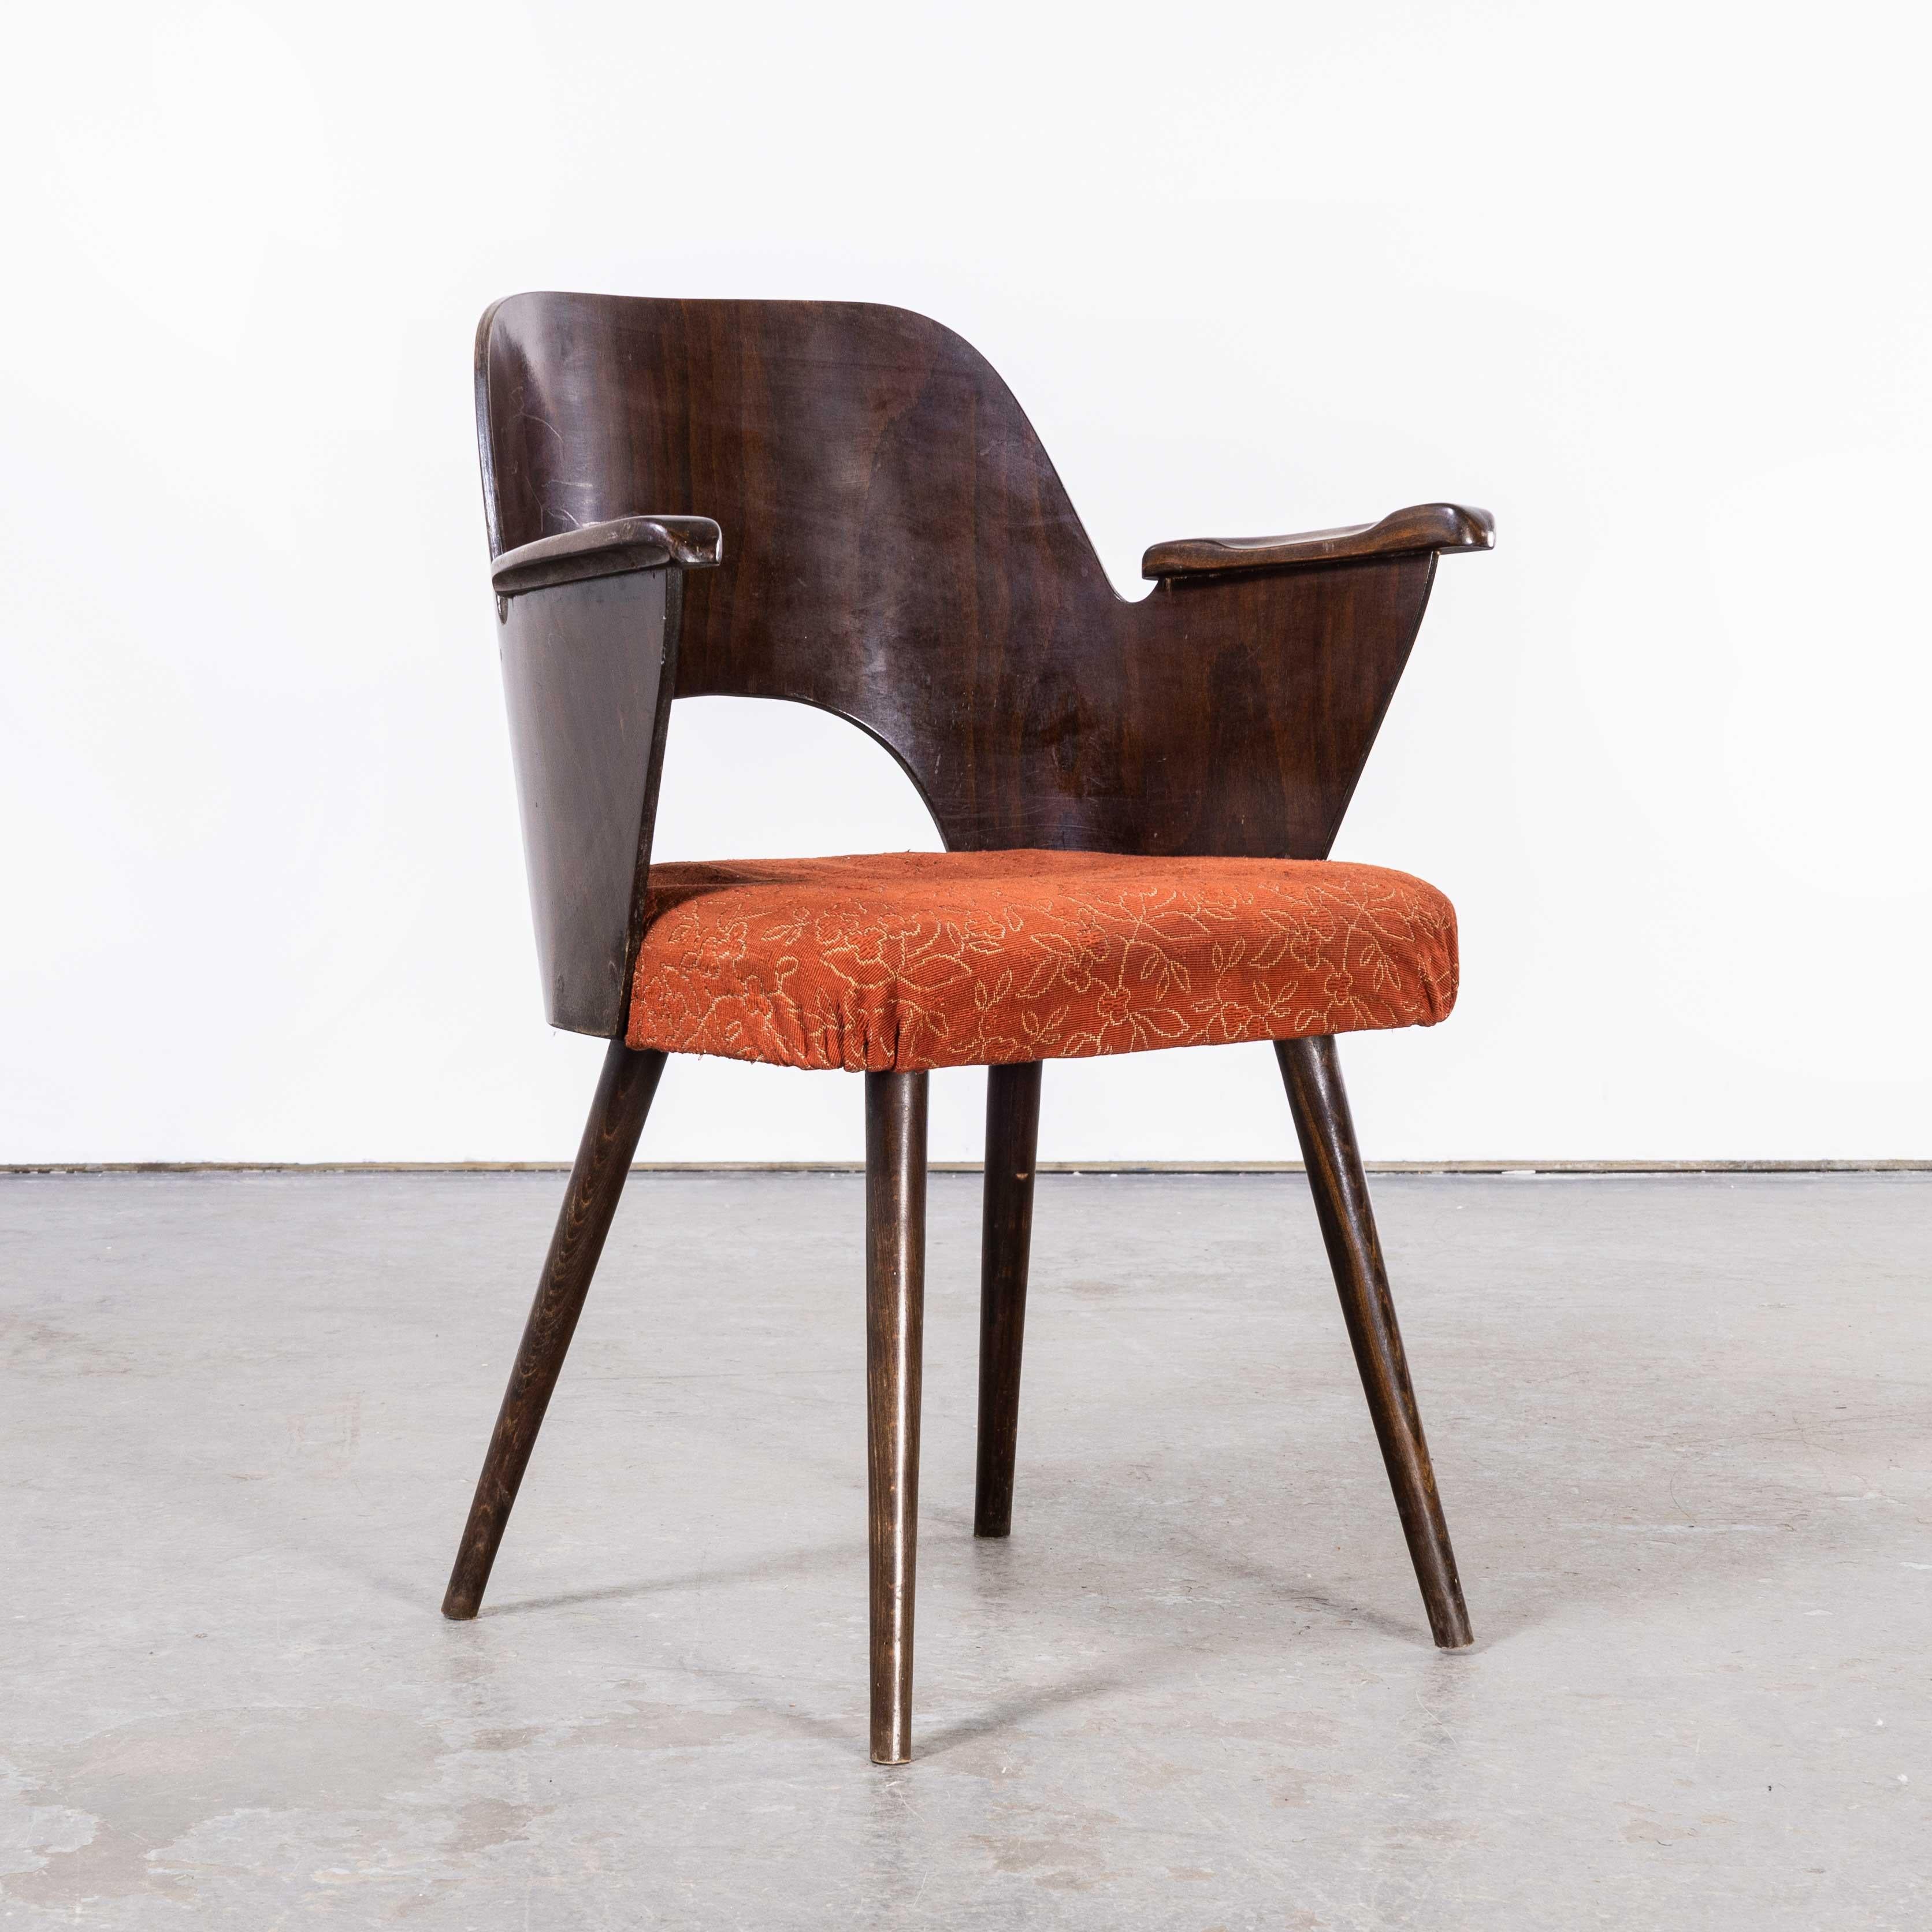 Czech 1950's Dark Walnut Upholstered Side Chair, Oswald Haerdt Model 515 For Sale